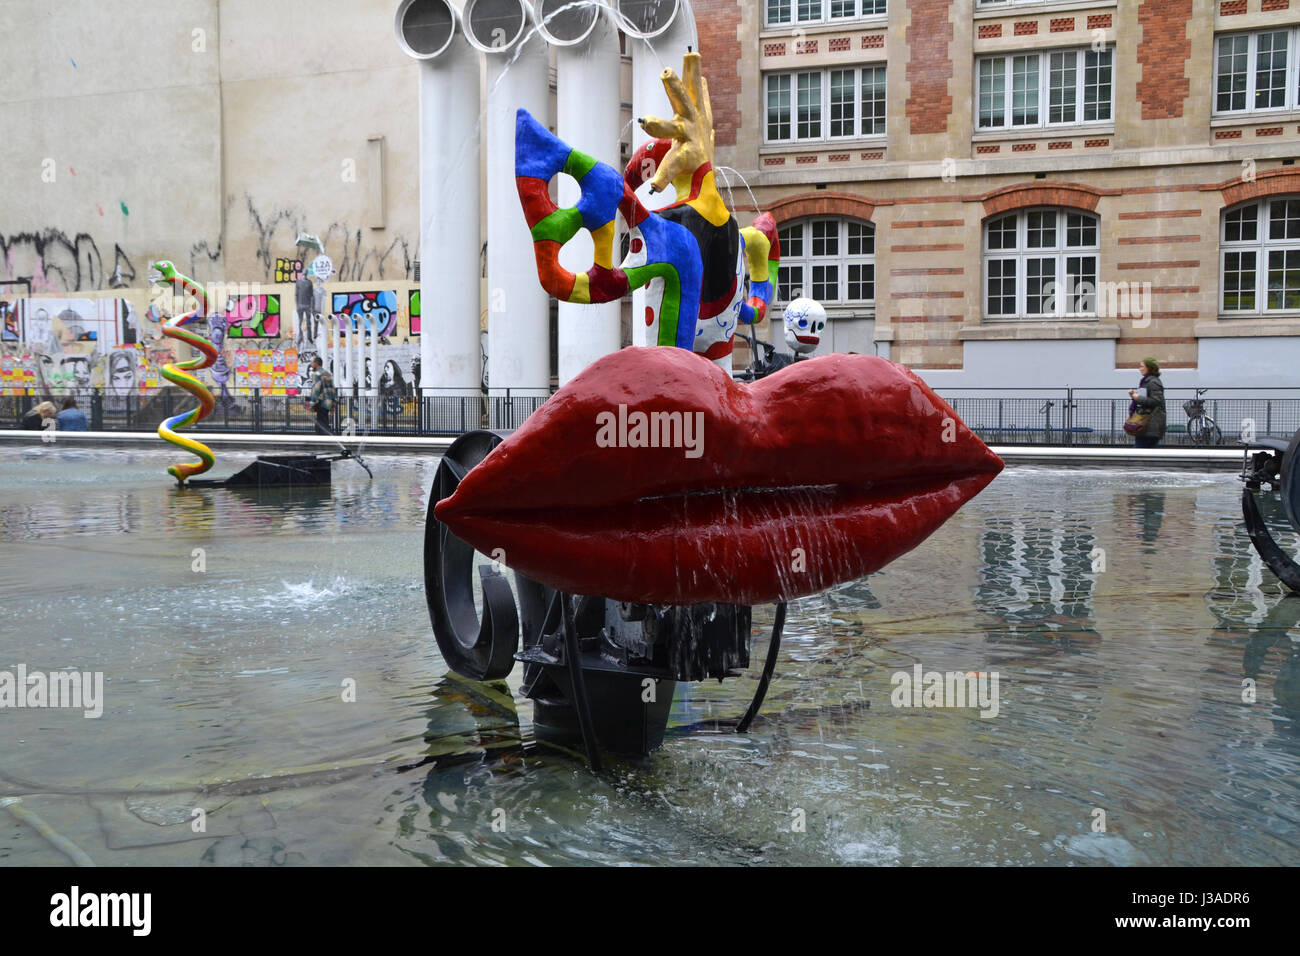 Stravinsky Fountain in Paris, France Stock Photo